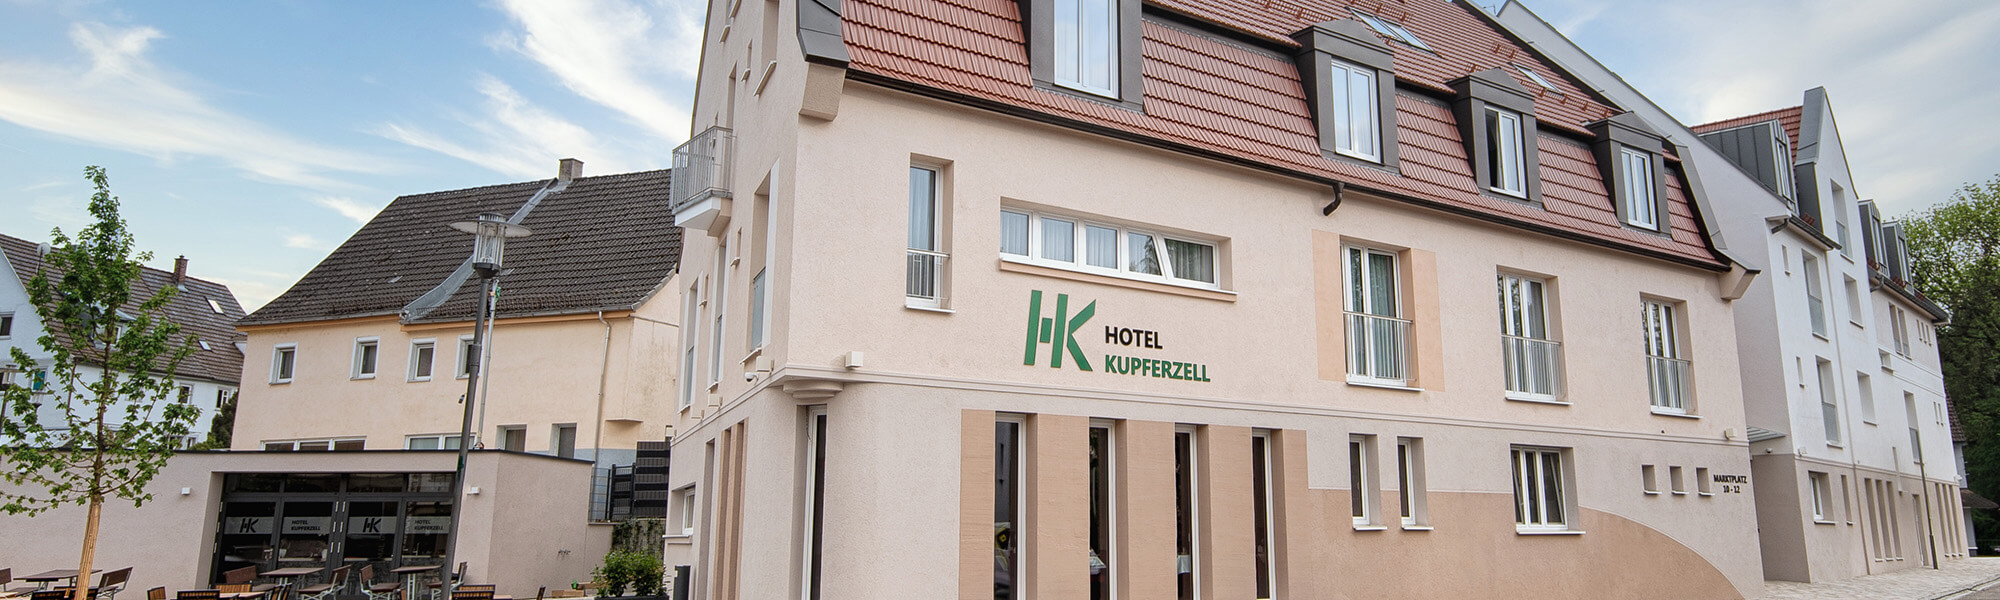 Hotel Kupferzell in Hohenlohe